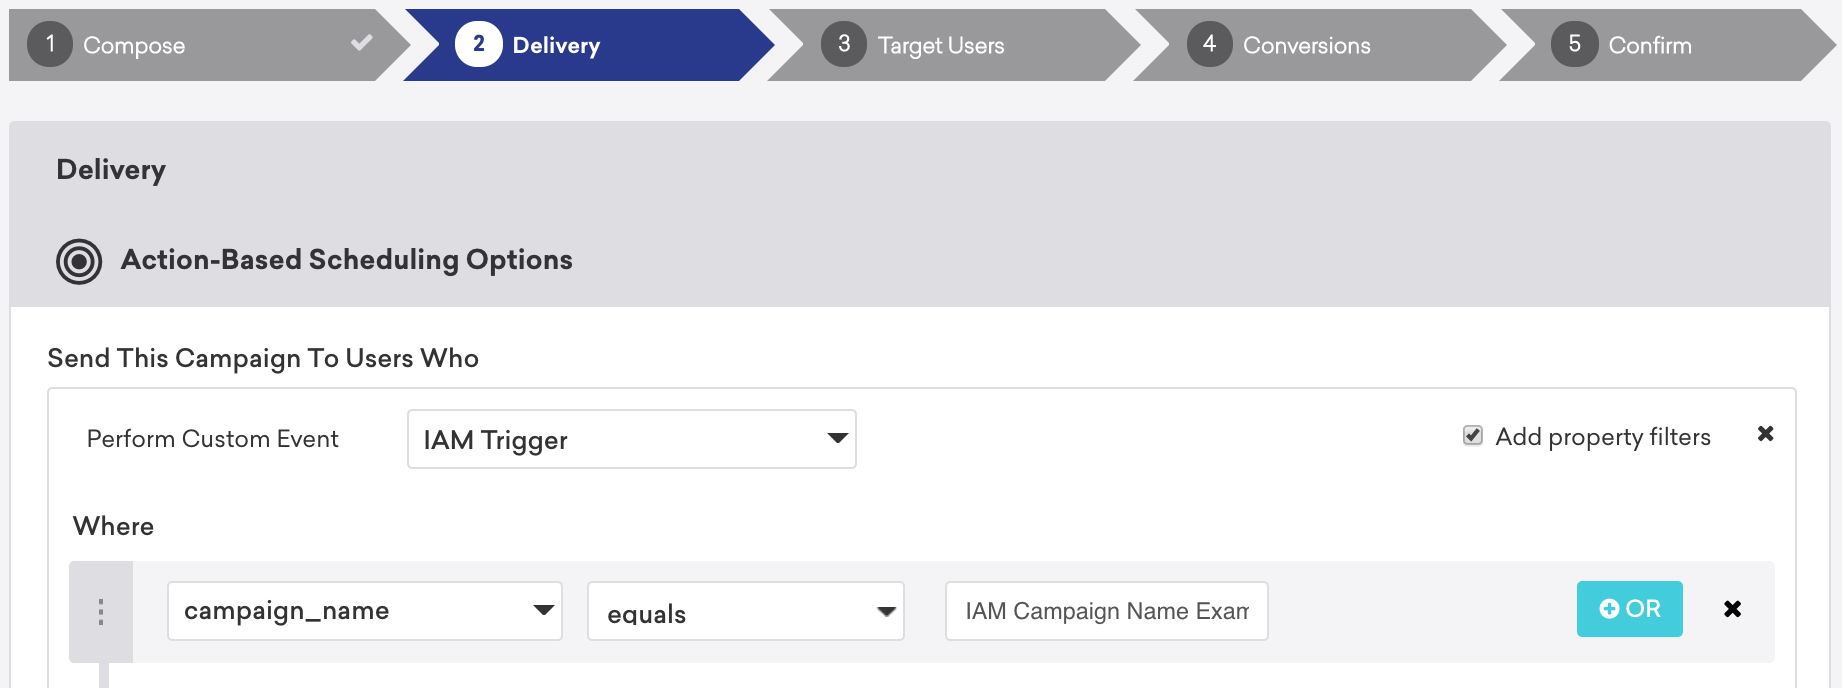 カスタムイベント「アプリ内メッセージトリガー」を実行したユーザーに配信されるアクションベースの配信アプリ内メッセージキャンペーン。「campaign_name」は「IAM キャンペーン名の例」です。